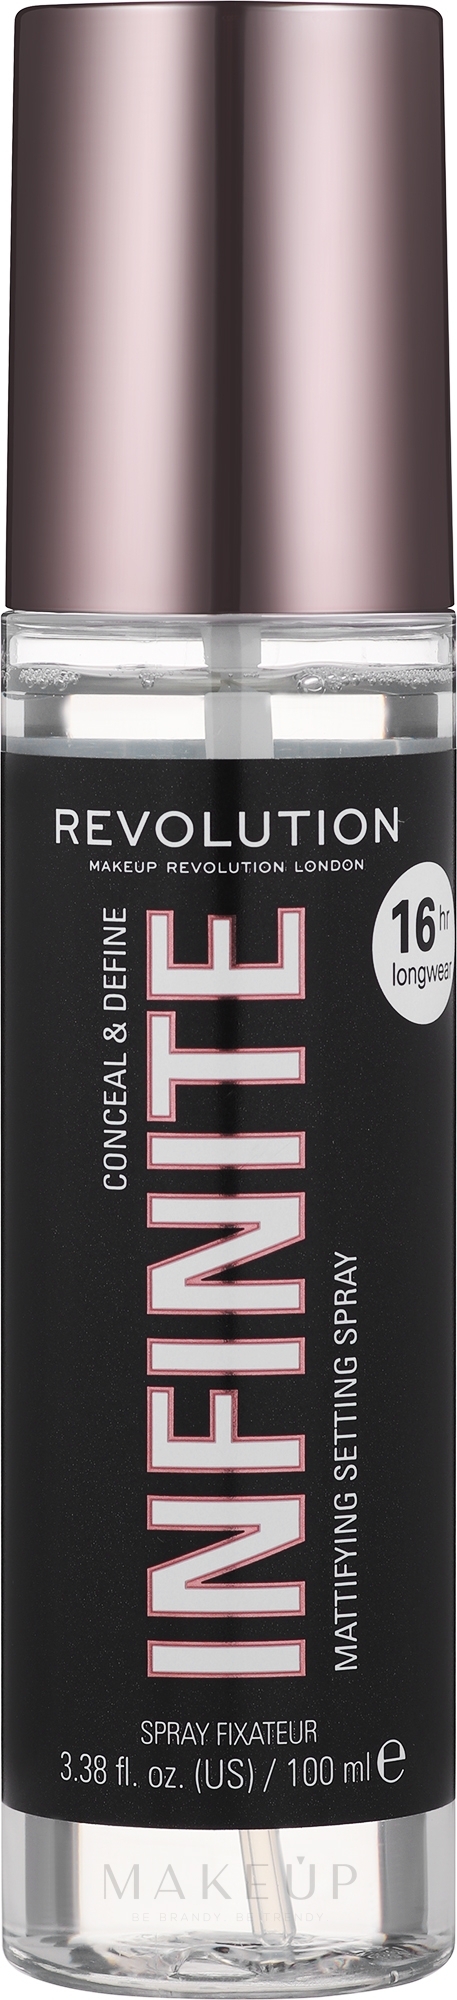 Langanhaltendes und mattierendes Make-up Fixierspray - Makeup Revolution Conceal & Define Infinite Makeup Fixing Spray 16H — Bild 100 ml